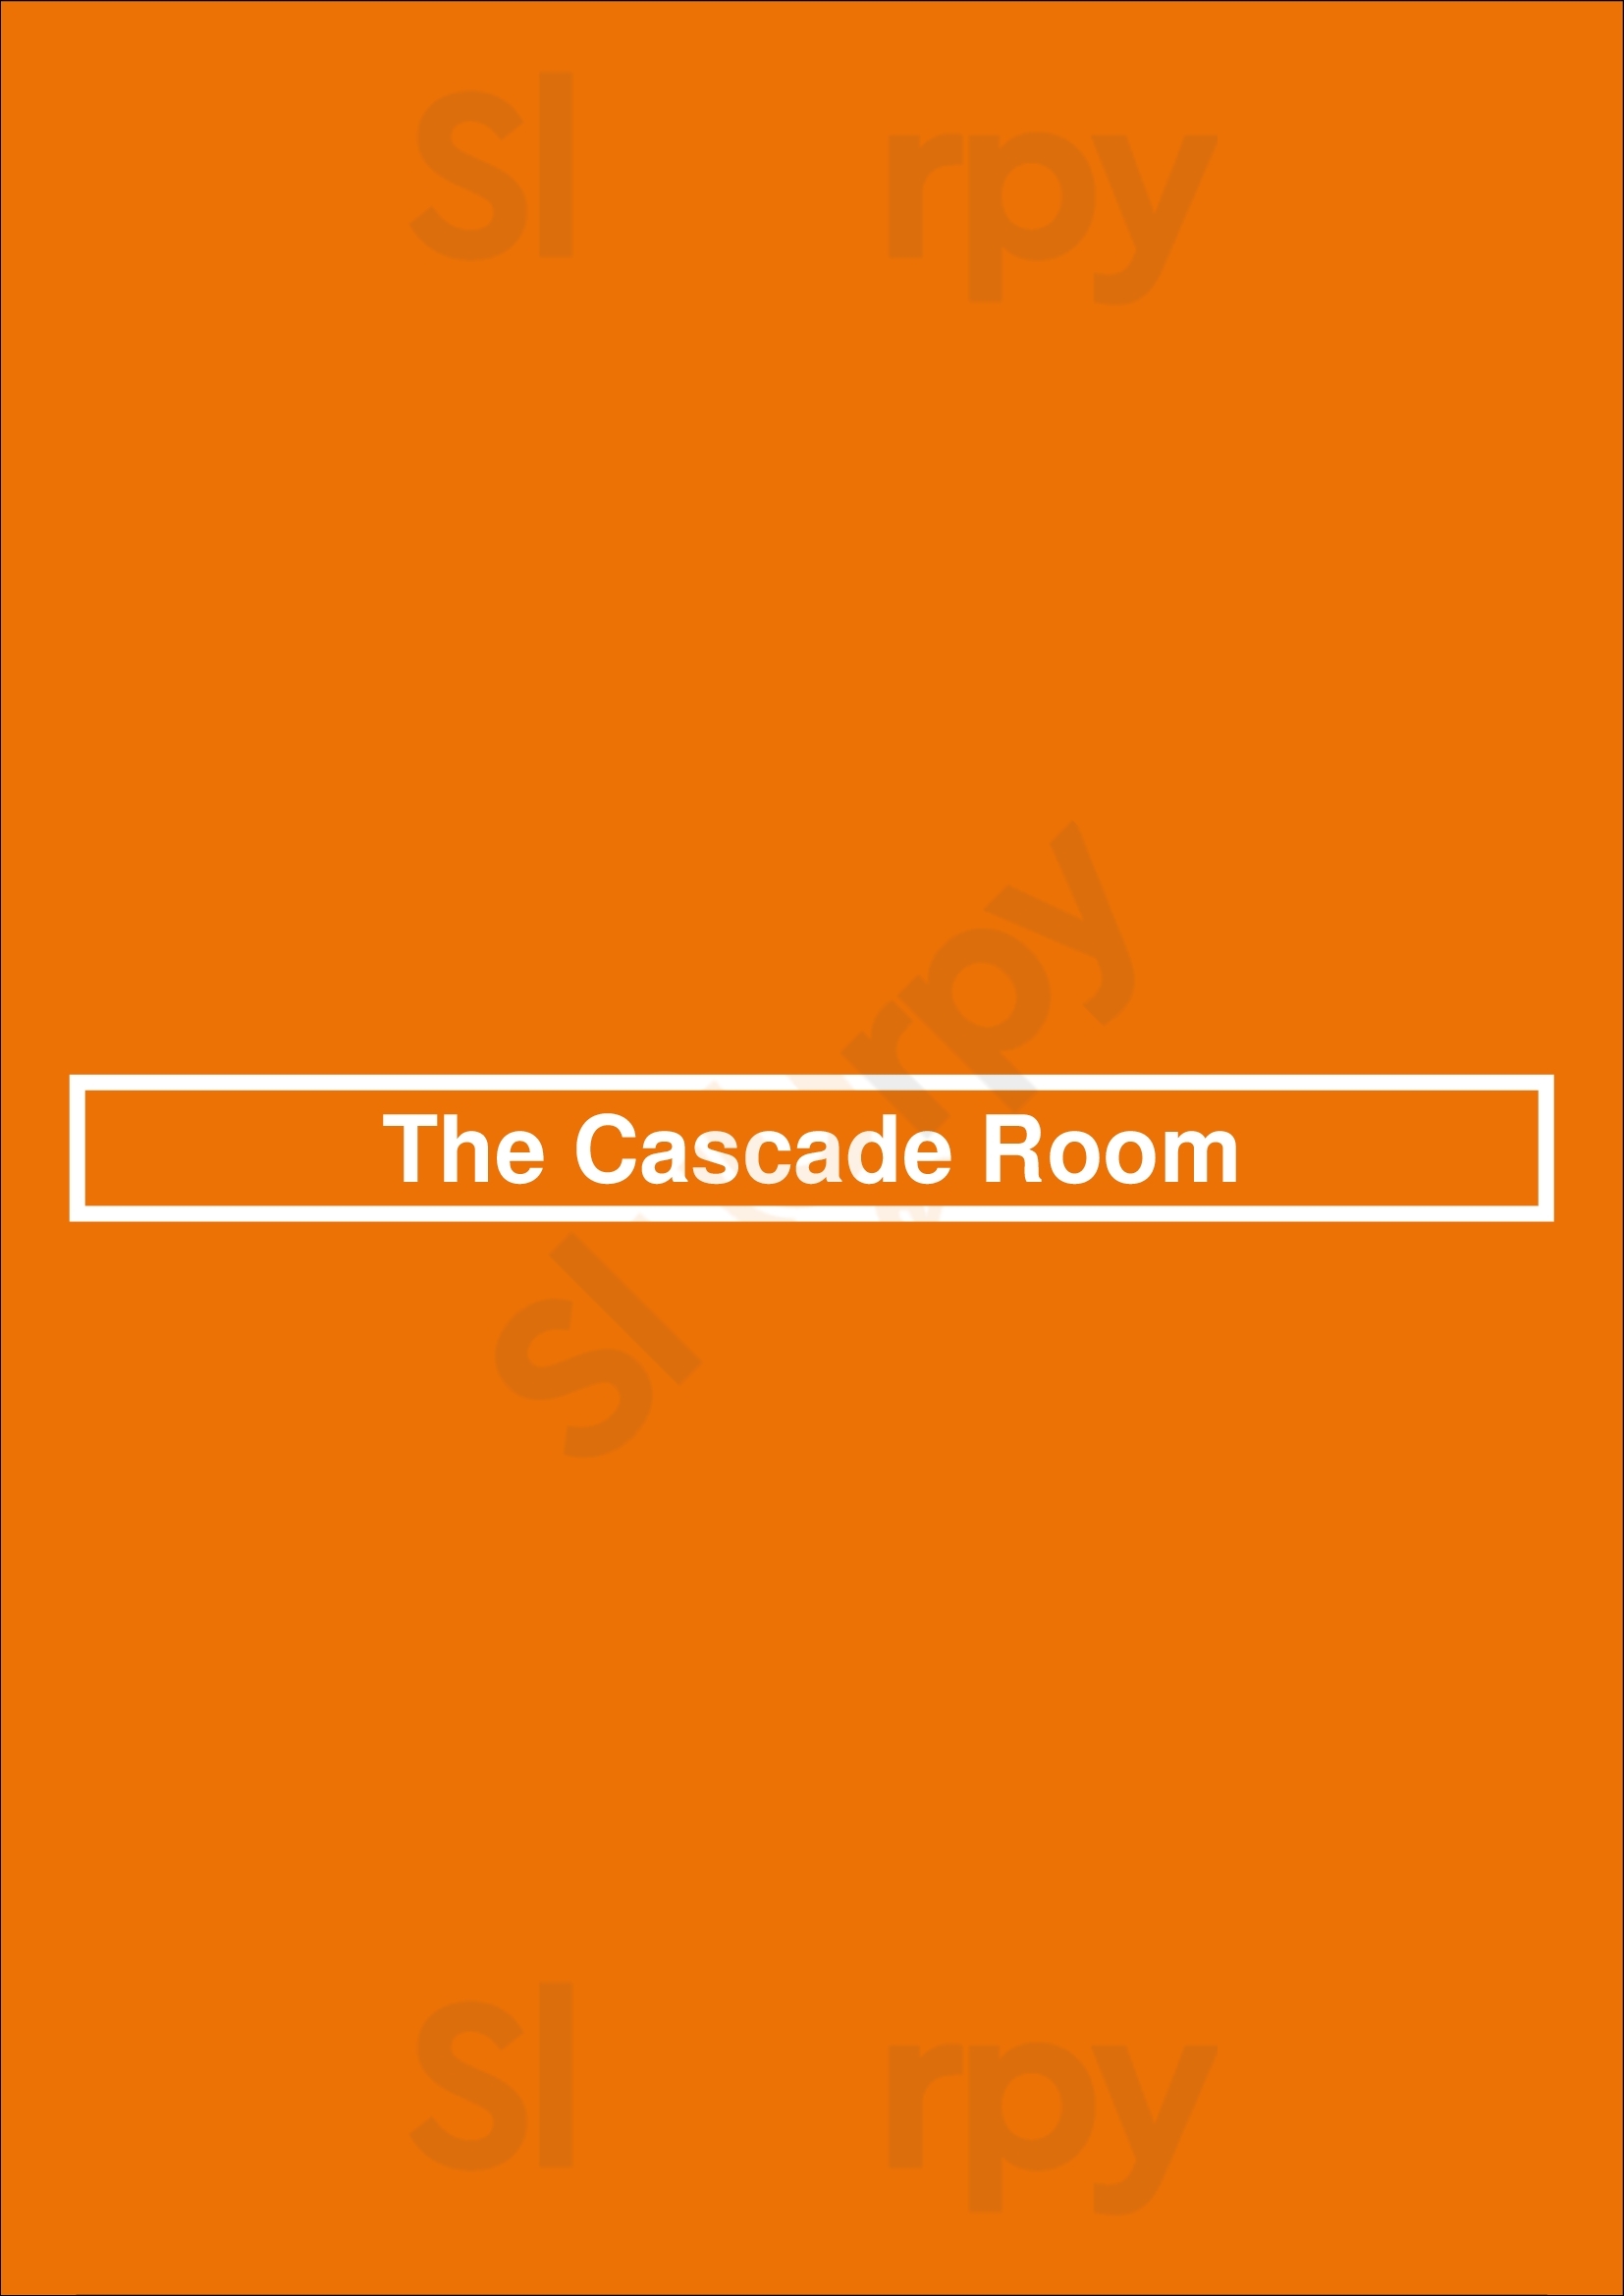 The Cascade Room Vancouver Menu - 1